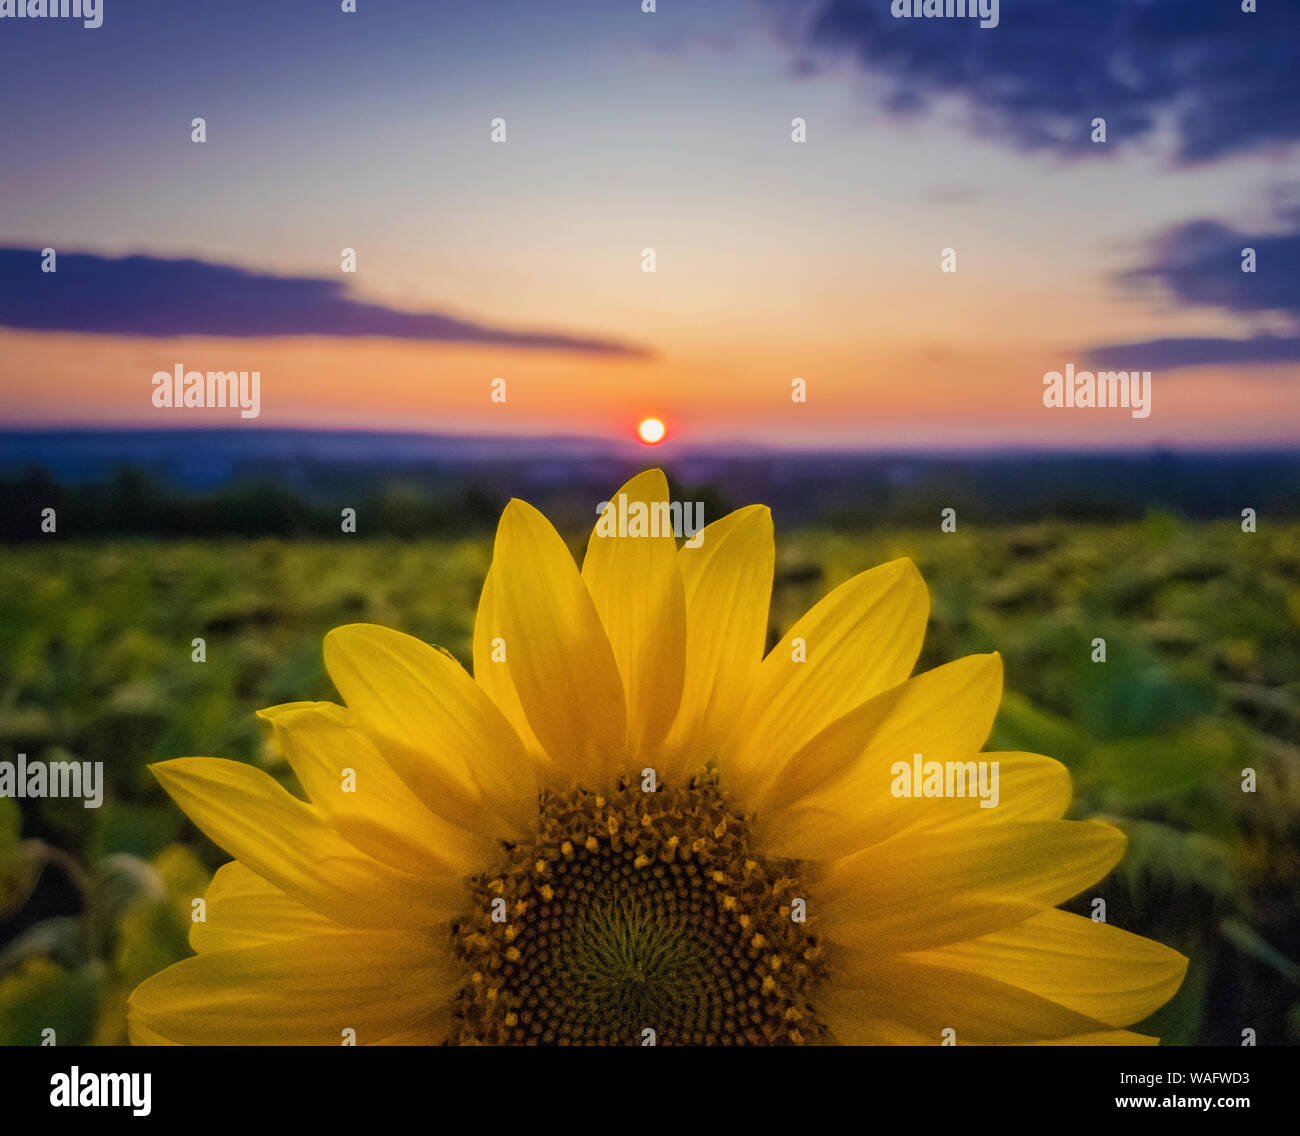 Bunter Herbst Sonnenuntergang, Sonne Kreis berühren ein reichhaltiges Sonnenblume Blütenblätter Krone. Schönen Herbst Szene, Pflanzenschutz und ernte Konzept. Bauernhof Feld idyllische Aussicht. Stockfoto